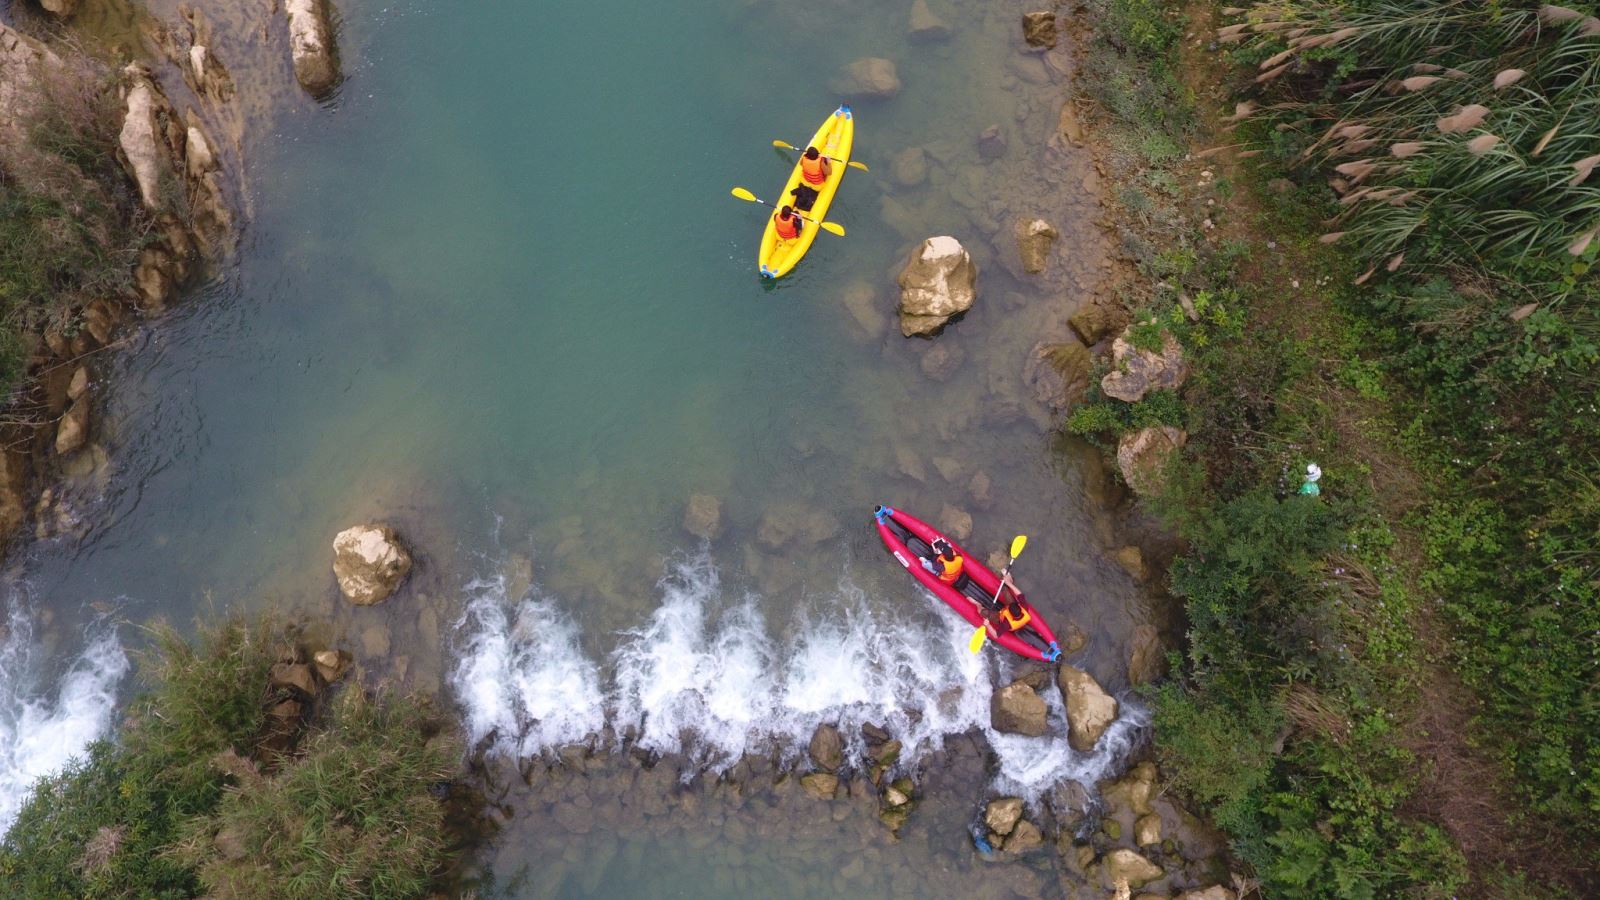 Thuyền Kayak bơm hơi có kiểu dáng hiện đại, màu sắc trẻ trung